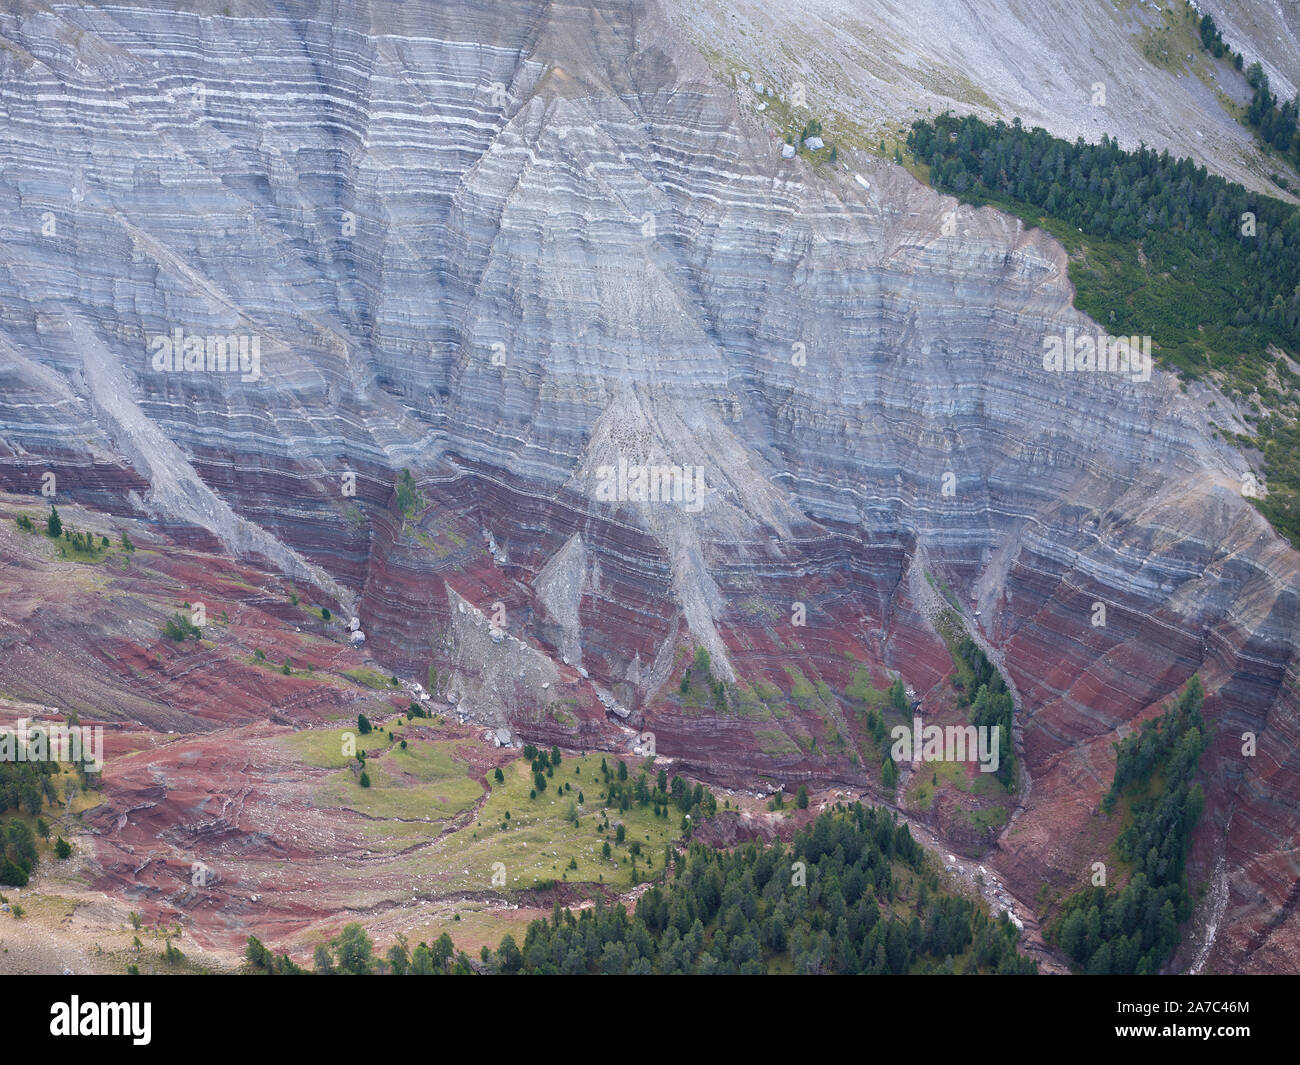 VISTA AEREA. Strati multicolore su un ripido pendio di rocce sedimentarie. Seceda, Val Gardena, Dolomiti, Alto Adige, Italia. Foto Stock